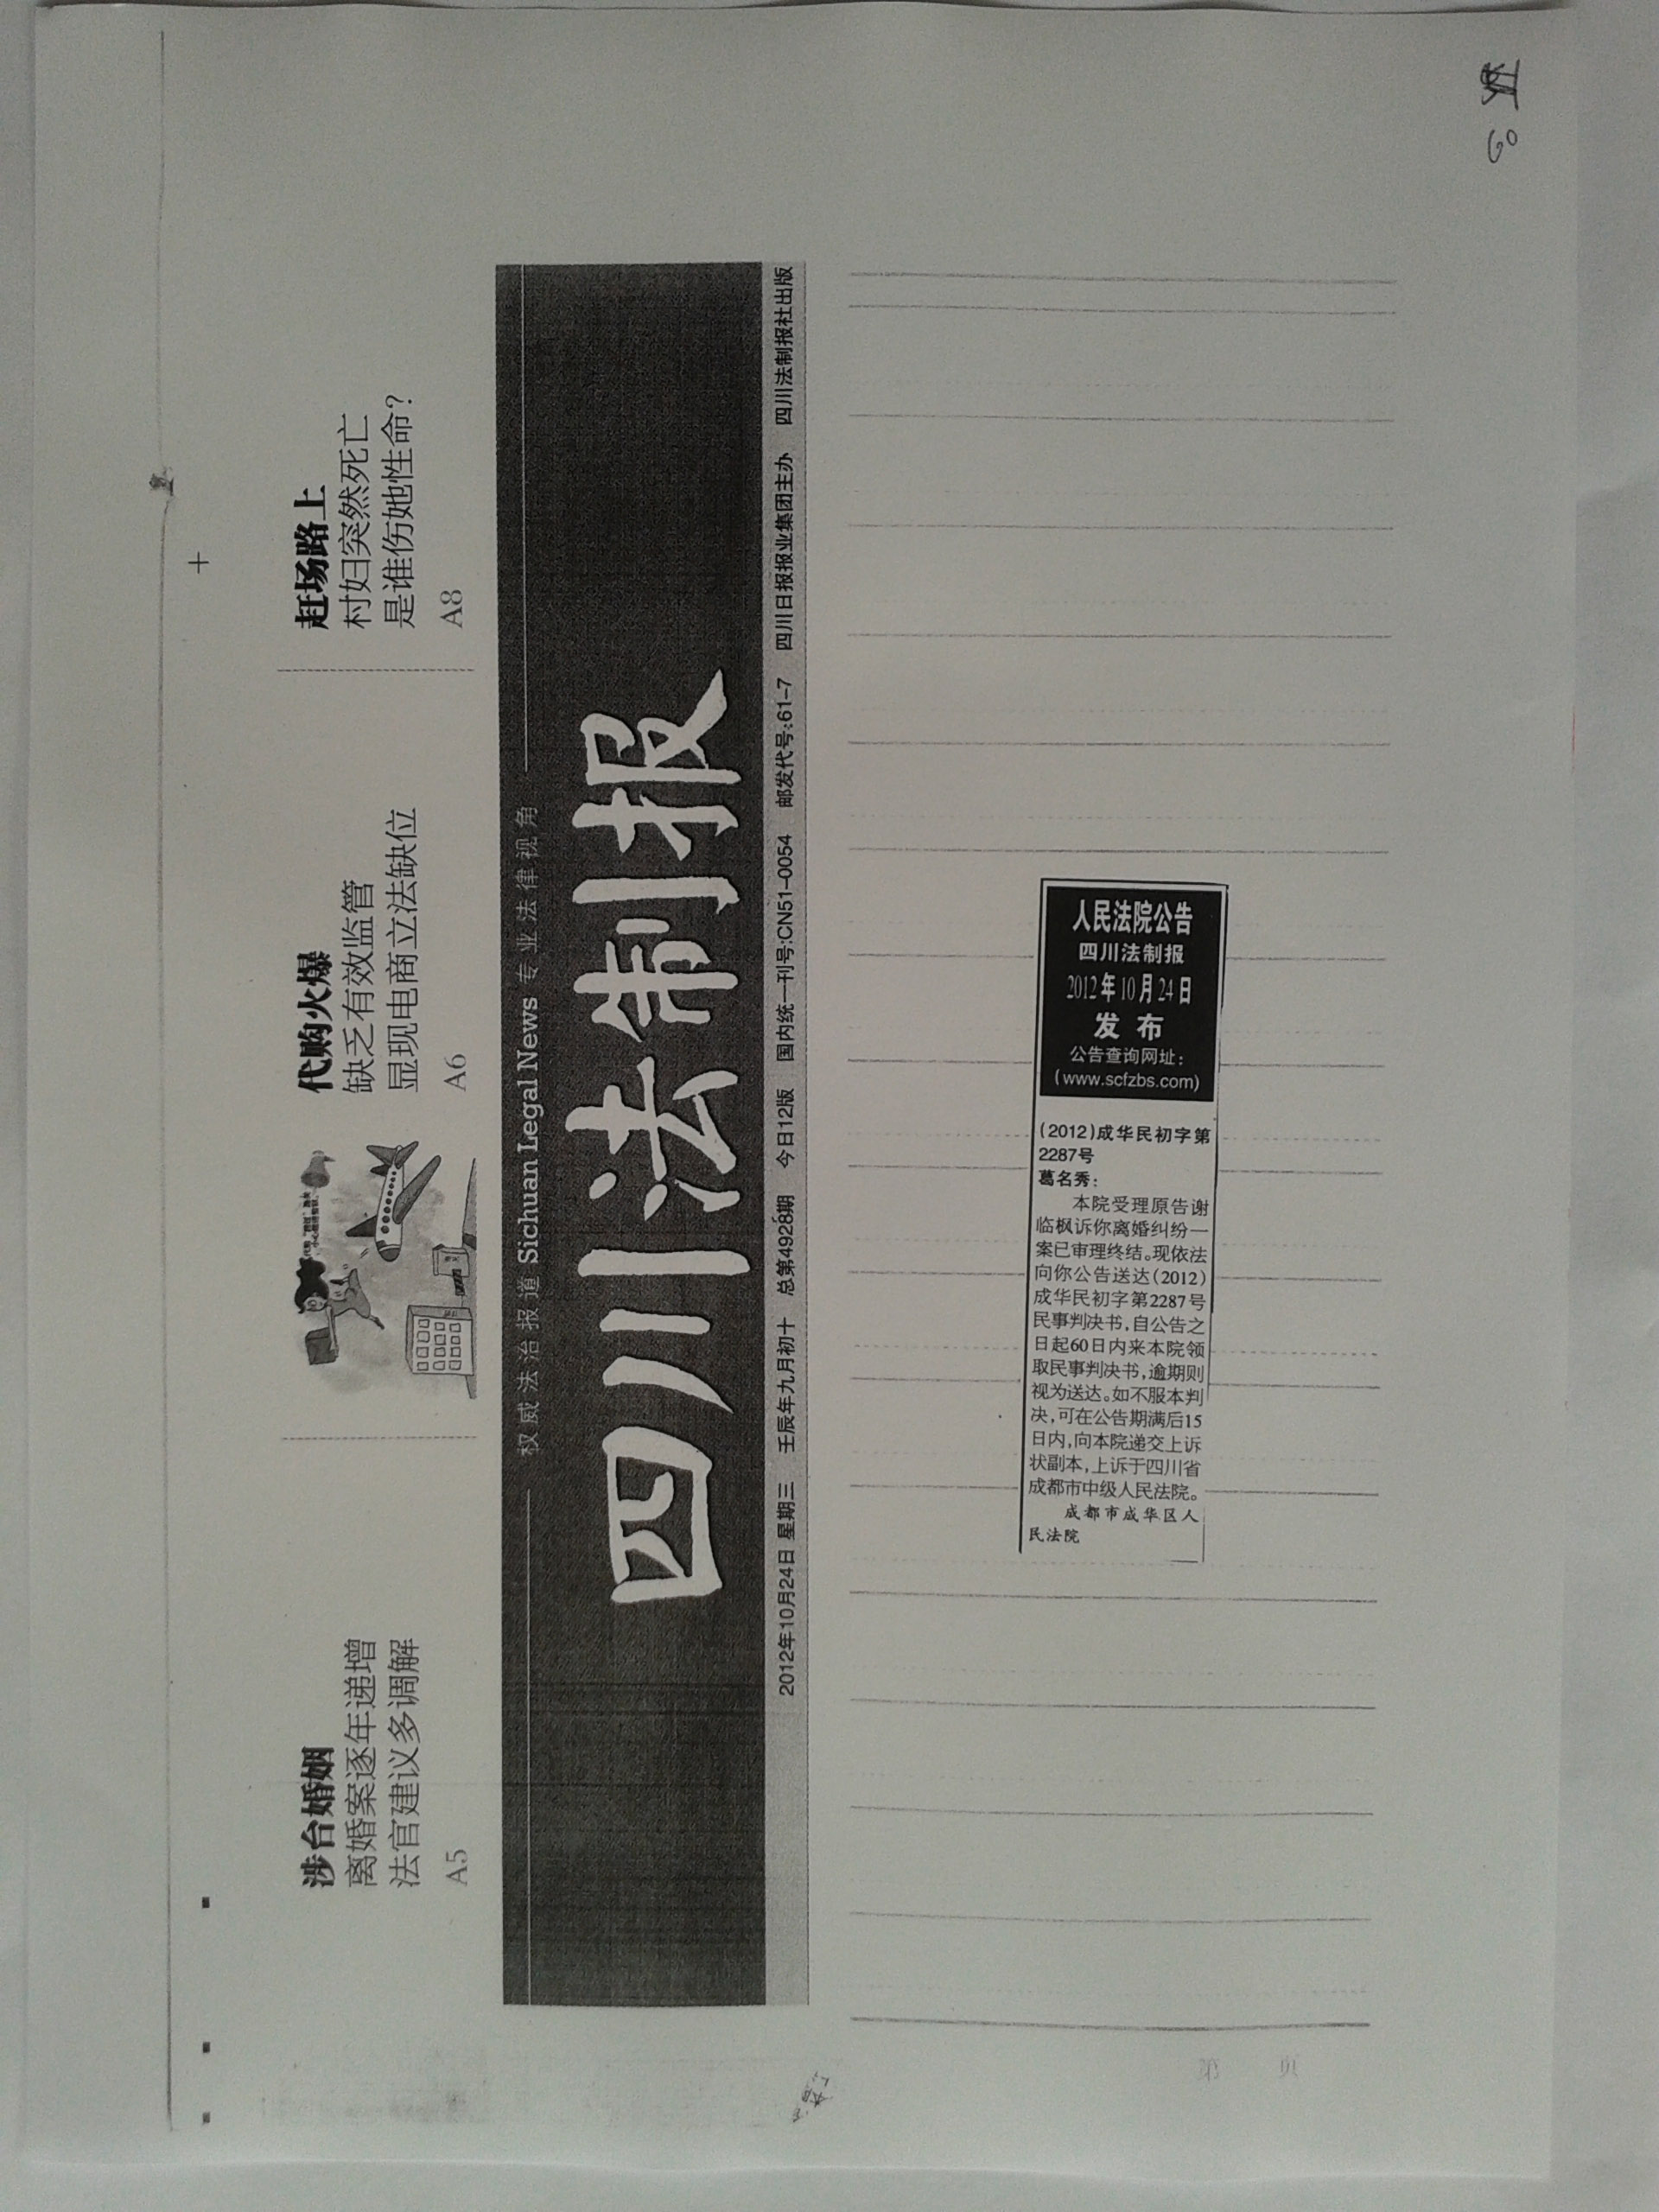 2012-10-24 对被告公告判决书(法制报--发网站).jpg